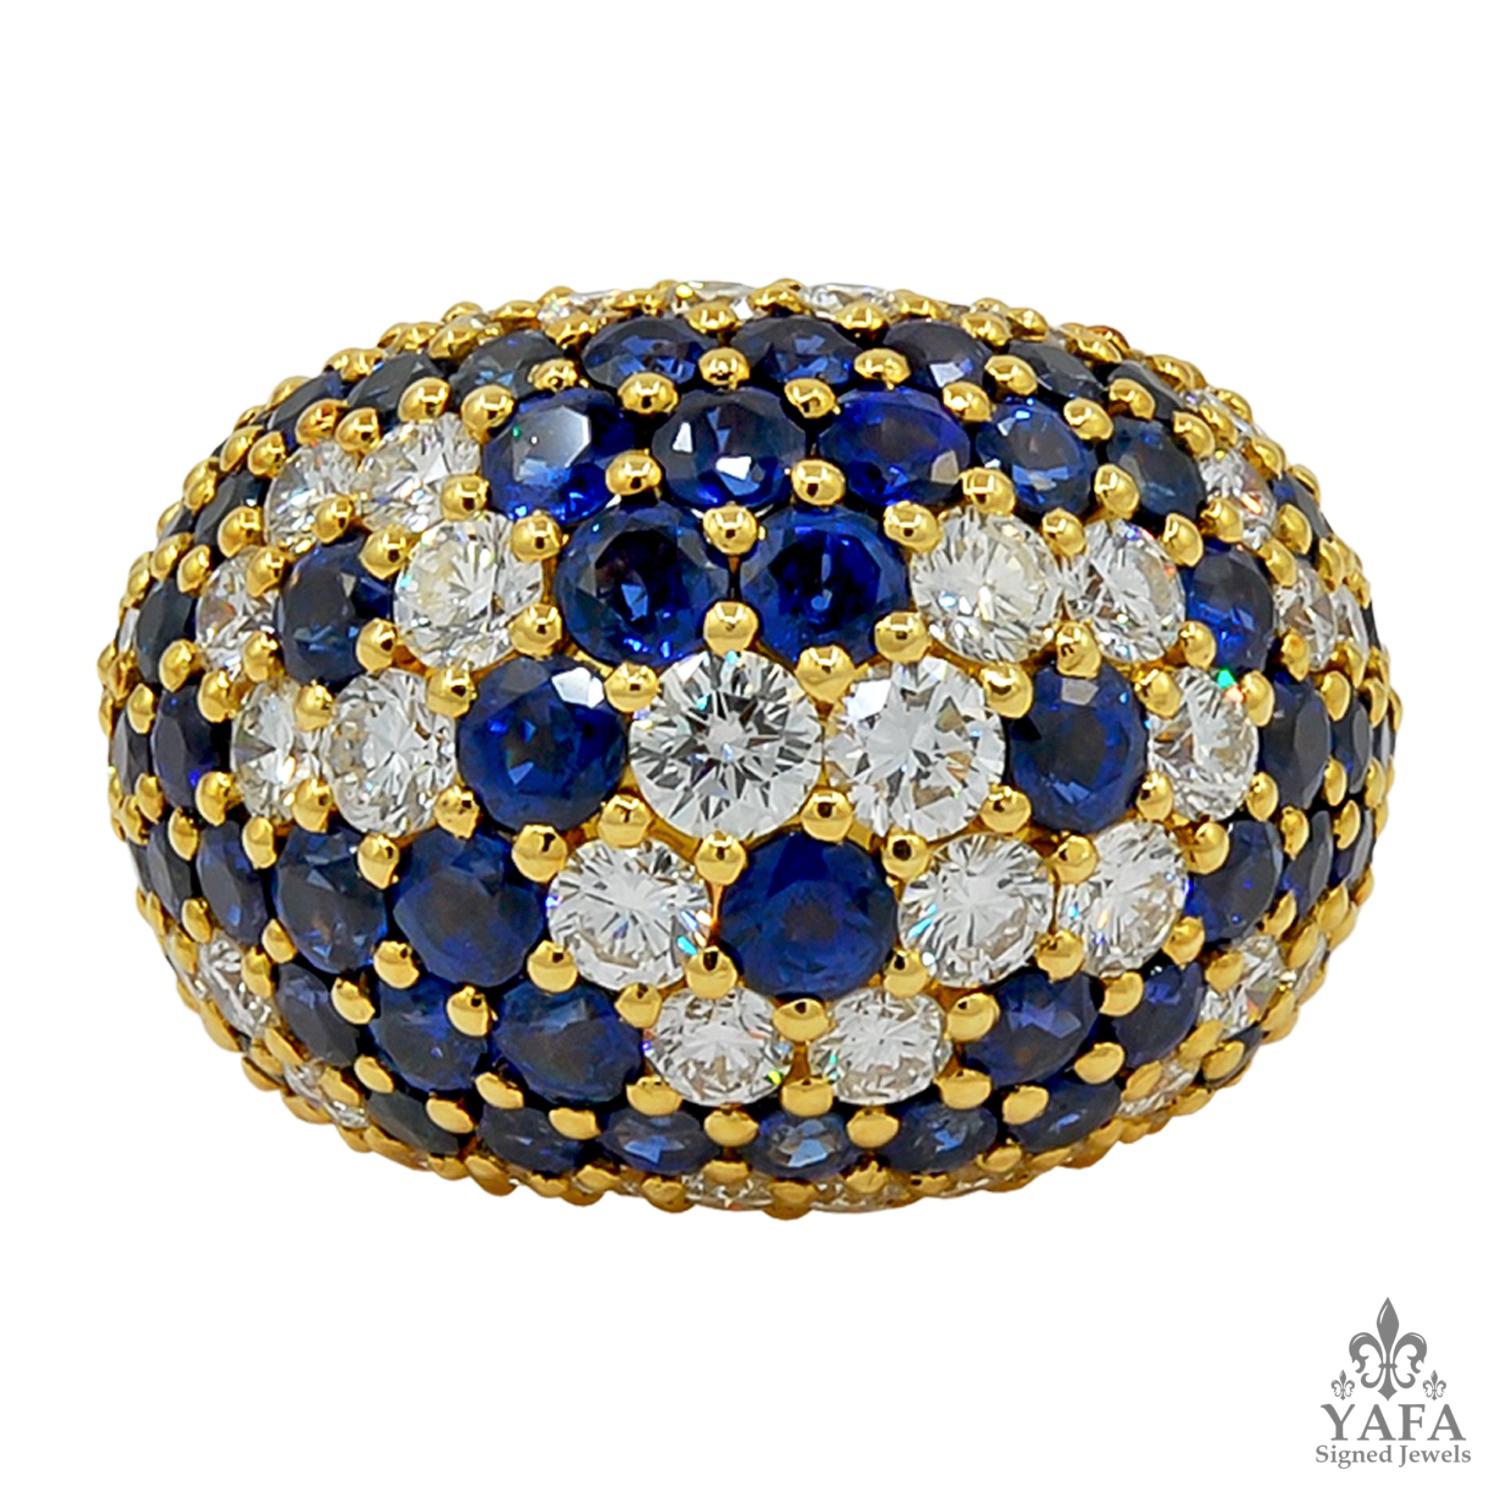 Van Cleef & Arpels Vintage Diamant-Saphir-Ring
Kuppelring aus 18 Karat Gelbgold, besetzt mit Diamanten im Rundschliff und Saphiren, signiert Van Cleef & Arpels, französisch.
ringgröße - 6
Signiert 